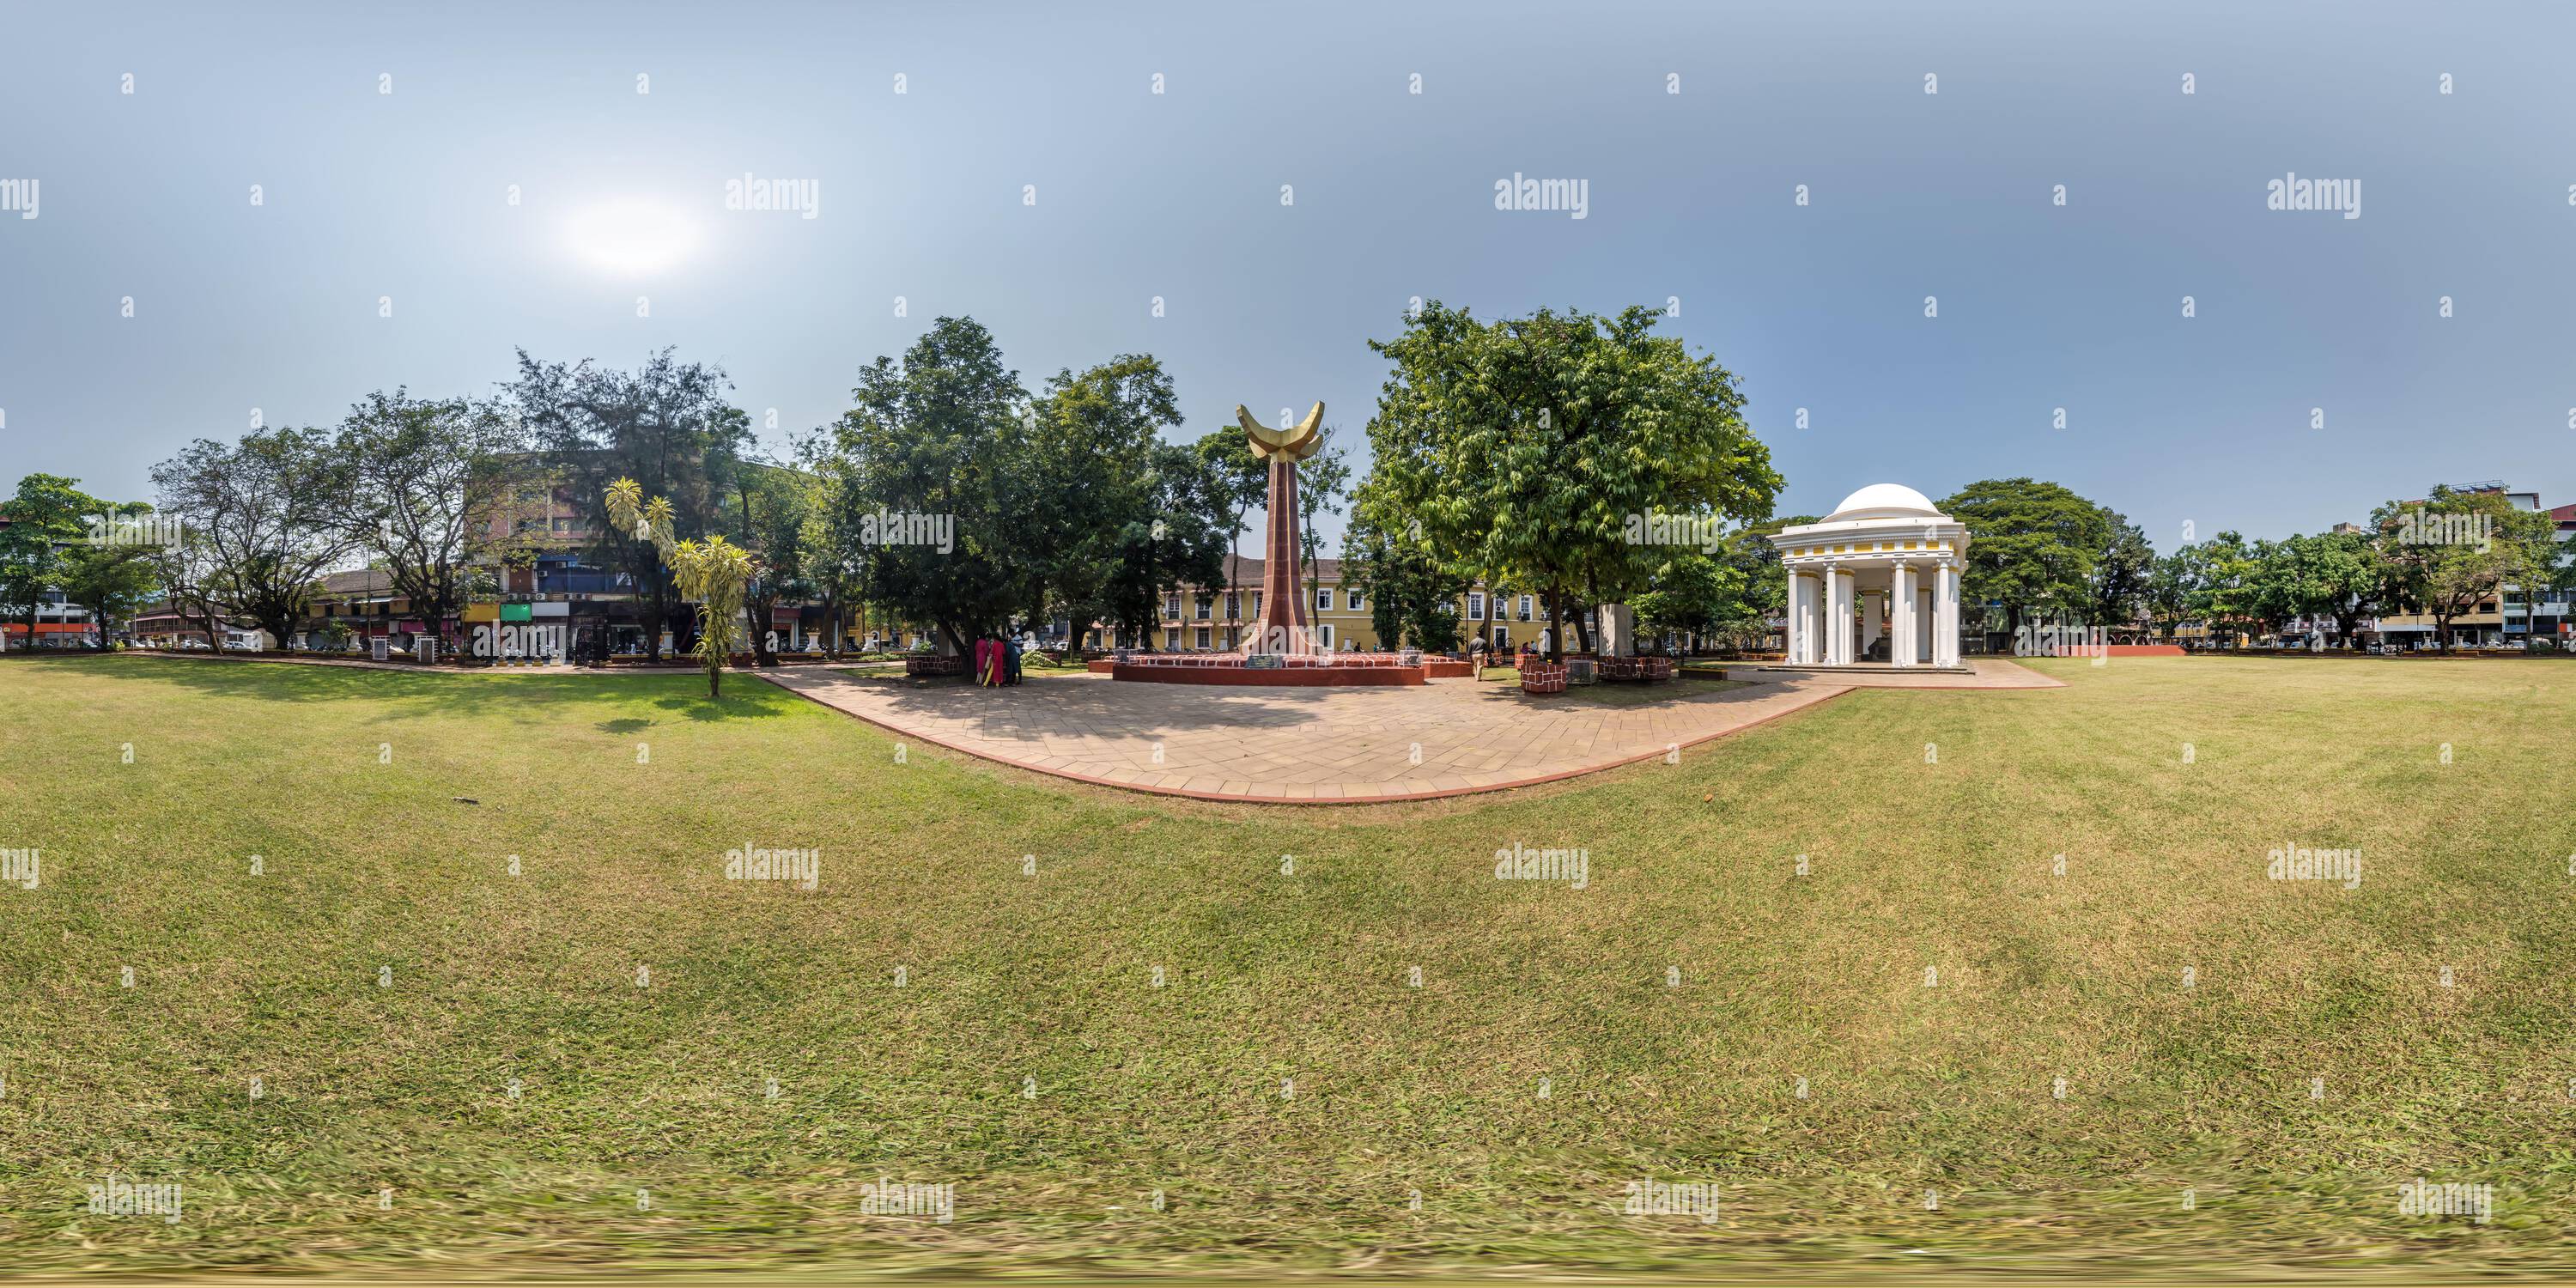 Vue panoramique à 360° de hdri 360 panorama de la place de l'indépendance de la ville près du monument dans le parc de la ville tropicale indienne en projection équirectangulaire. Contenu VR AR,